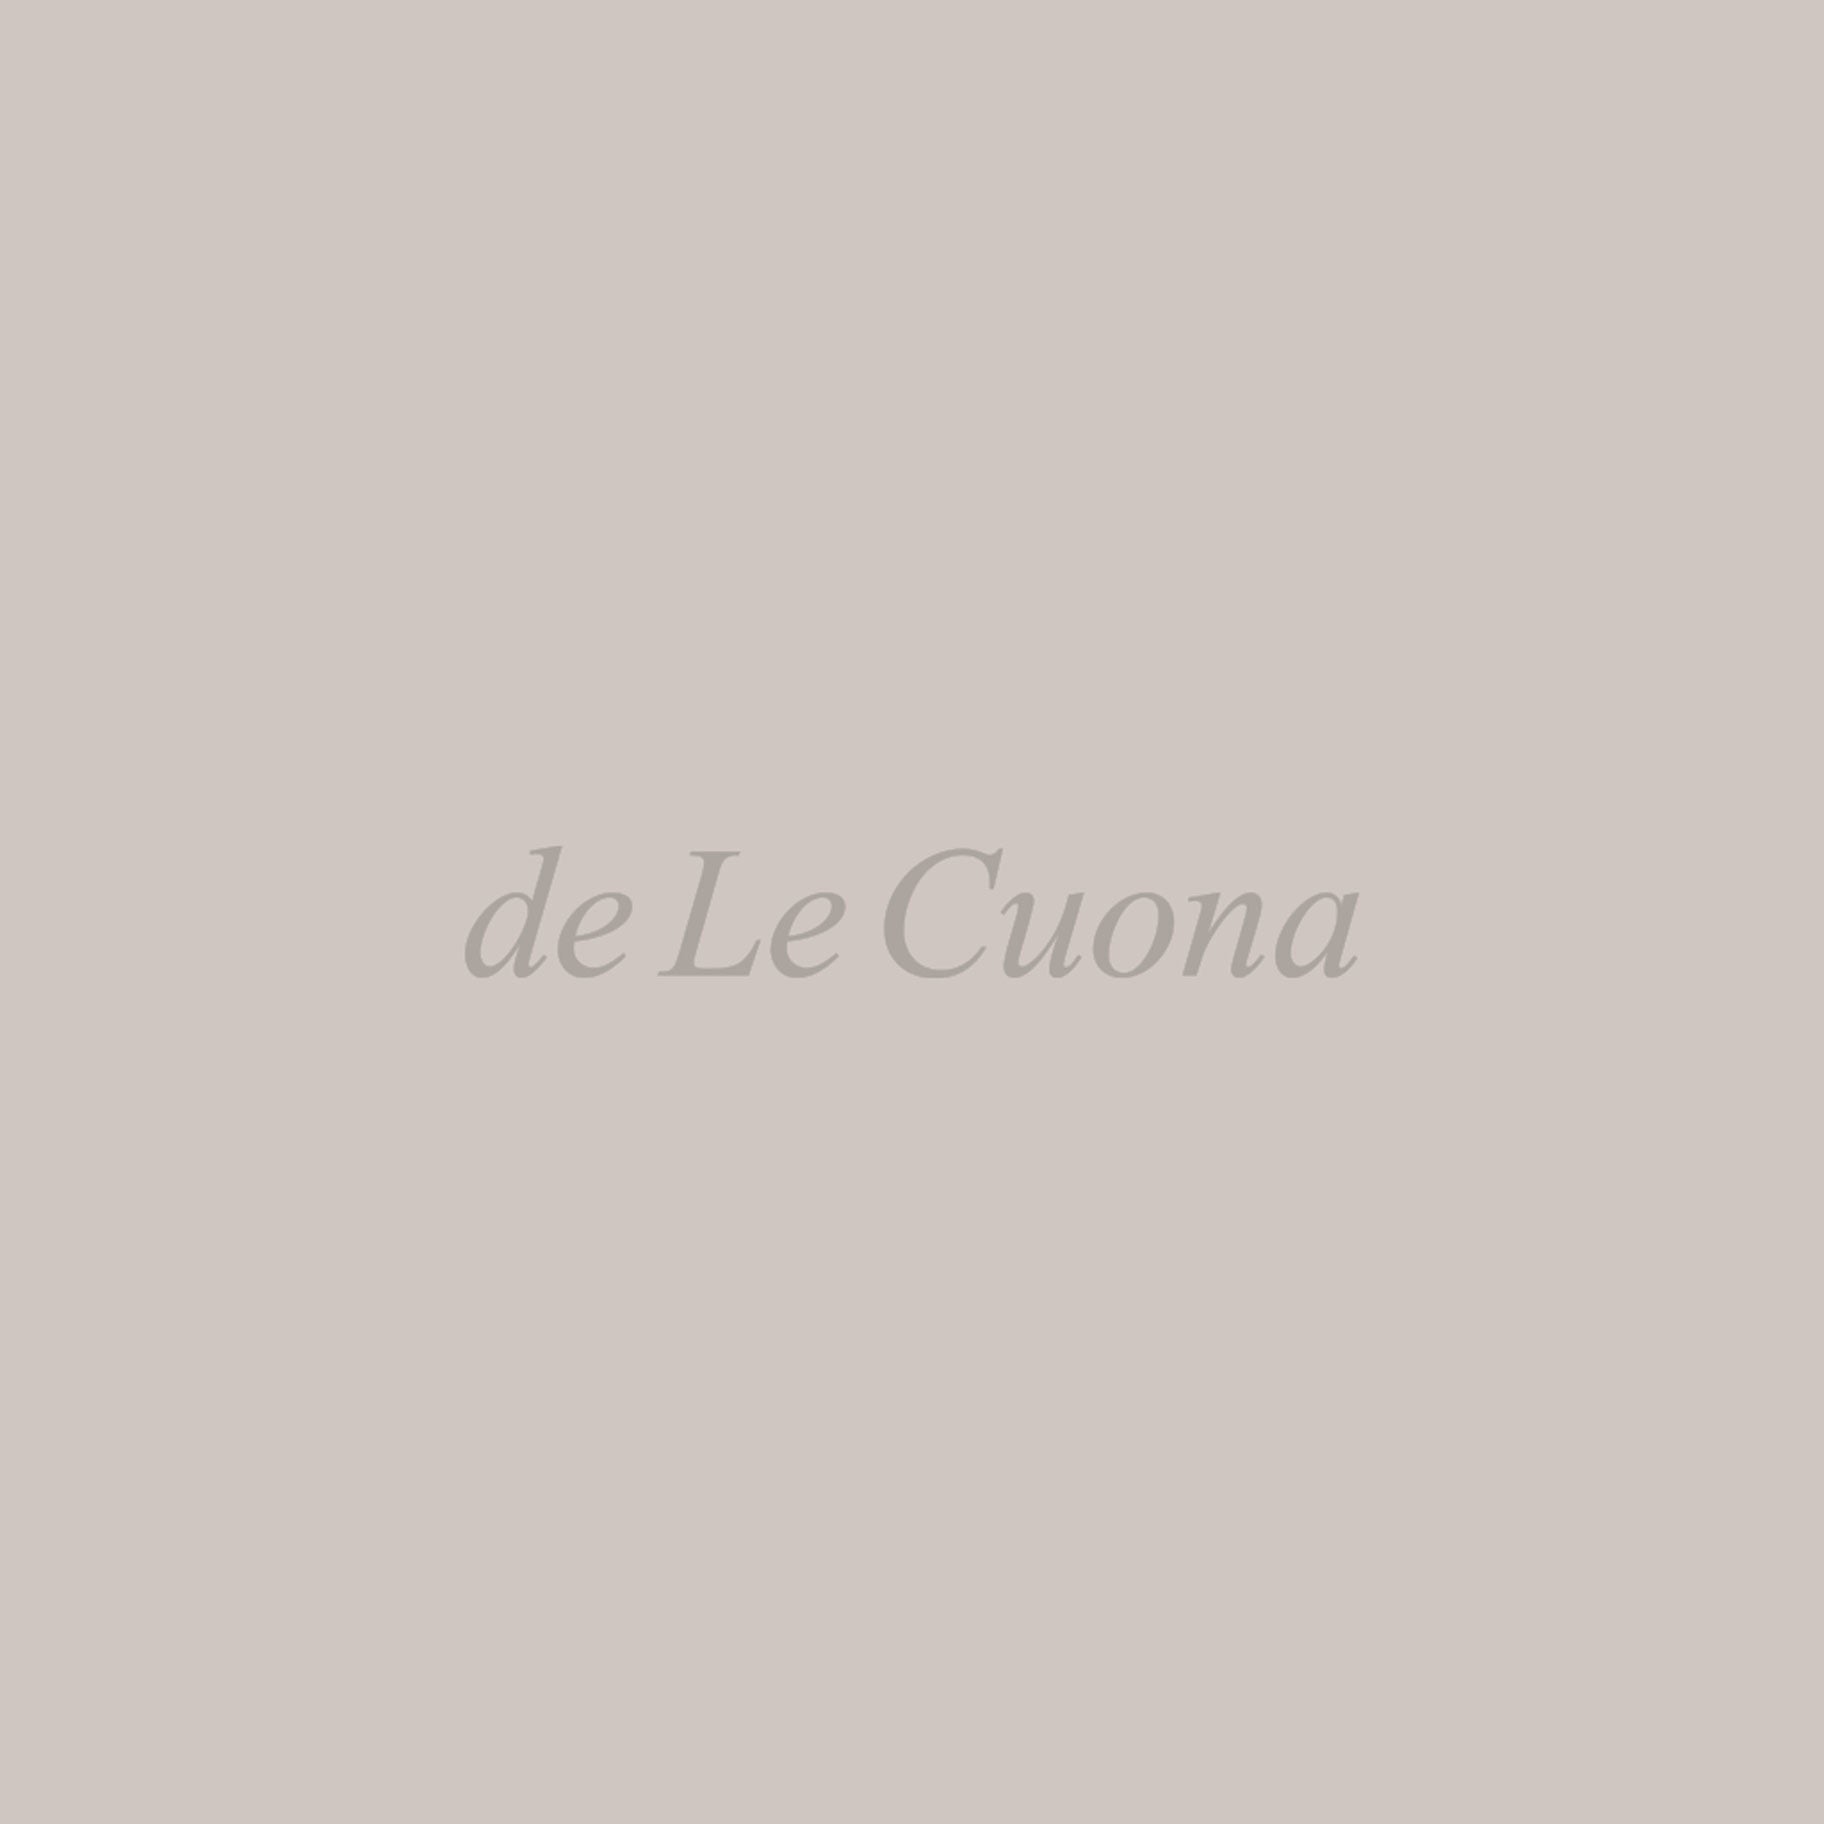 Curtaining – de Le Cuona, Inc.